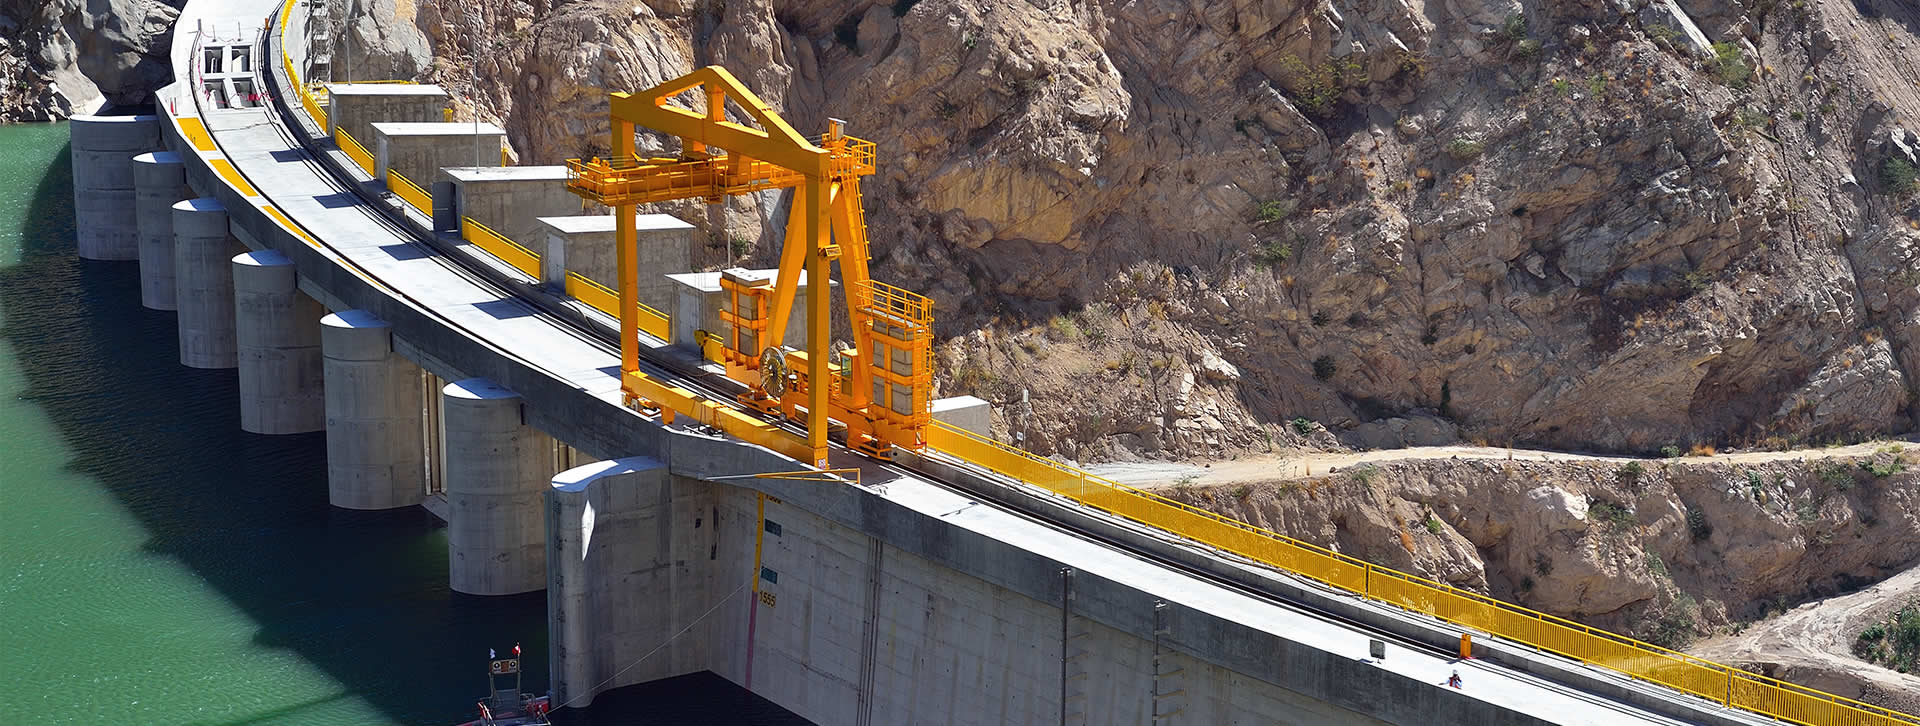 Vial y Vives - DSD, Cerro del Águila es una central hidroeléctrica de 557 MW de potencia en Huancavelica, Perú